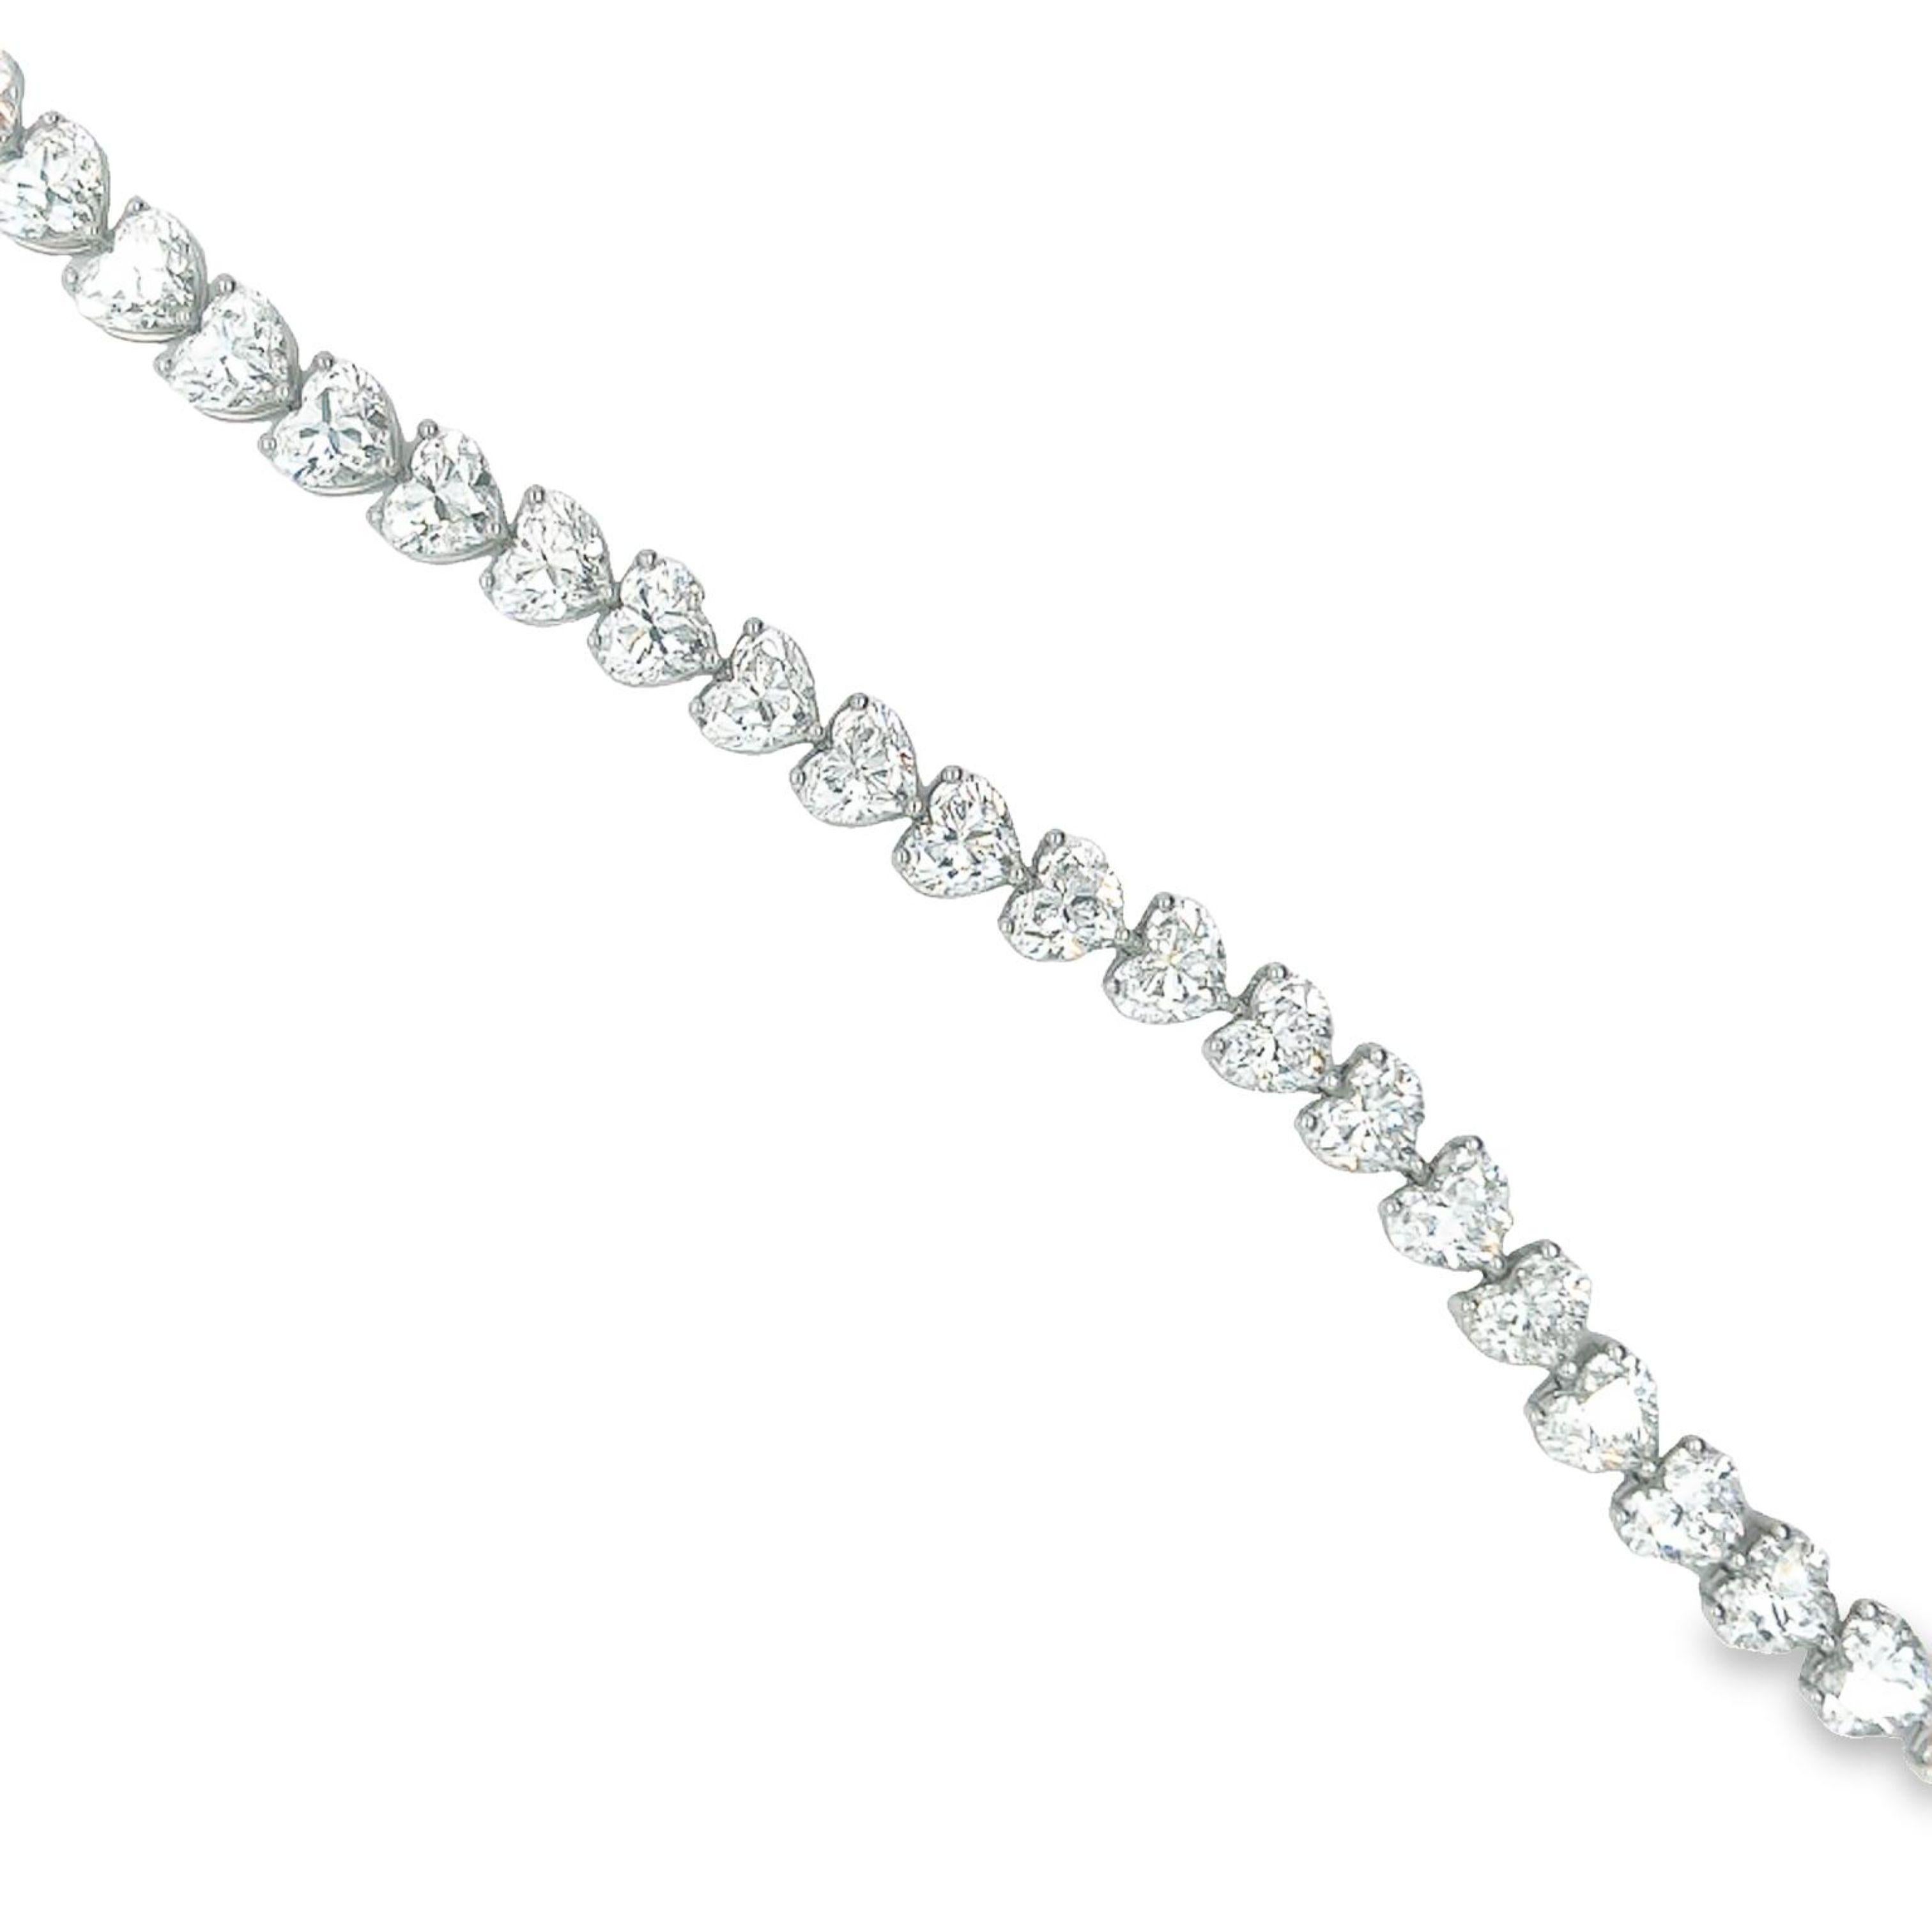 Rosenberg Diamonds and Co. 22,59 Karat Gesamtgewicht Herzform 7 Zoll Diamant-Tennis-Armband in Platin gesetzt. Diese schöne gerade Linie Armband besteht aus .70 Karat, D-F in Farbe VS2-IF in Klarheit. Alle 32 Steine sind perfekt aufeinander